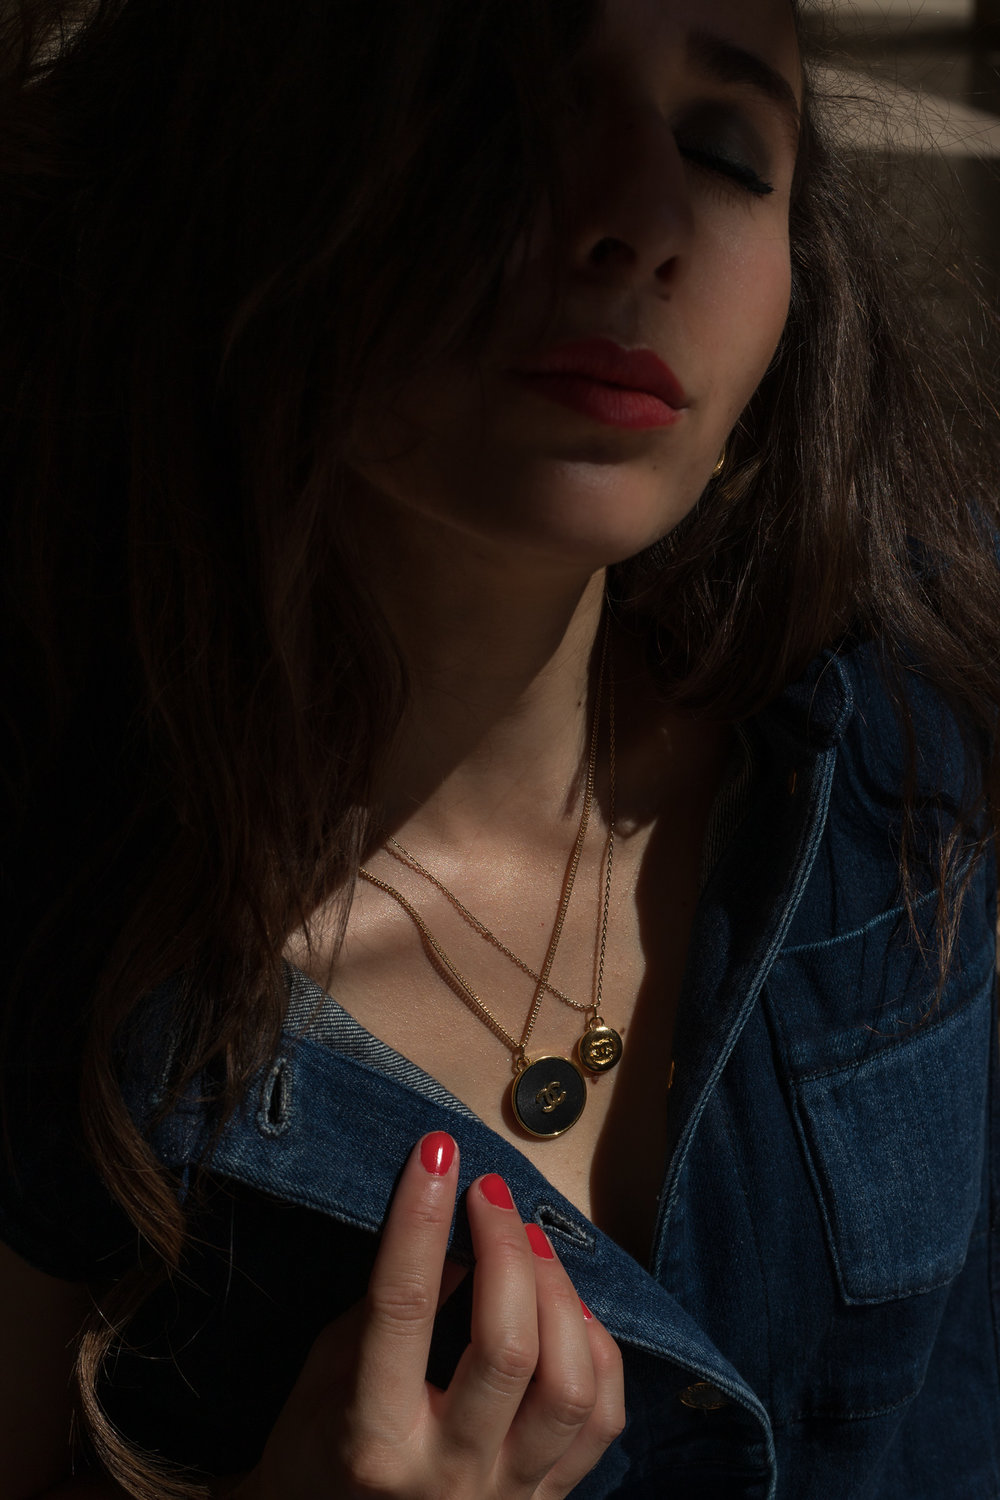 Small Gold Chanel Button Pendant Necklace — singulié